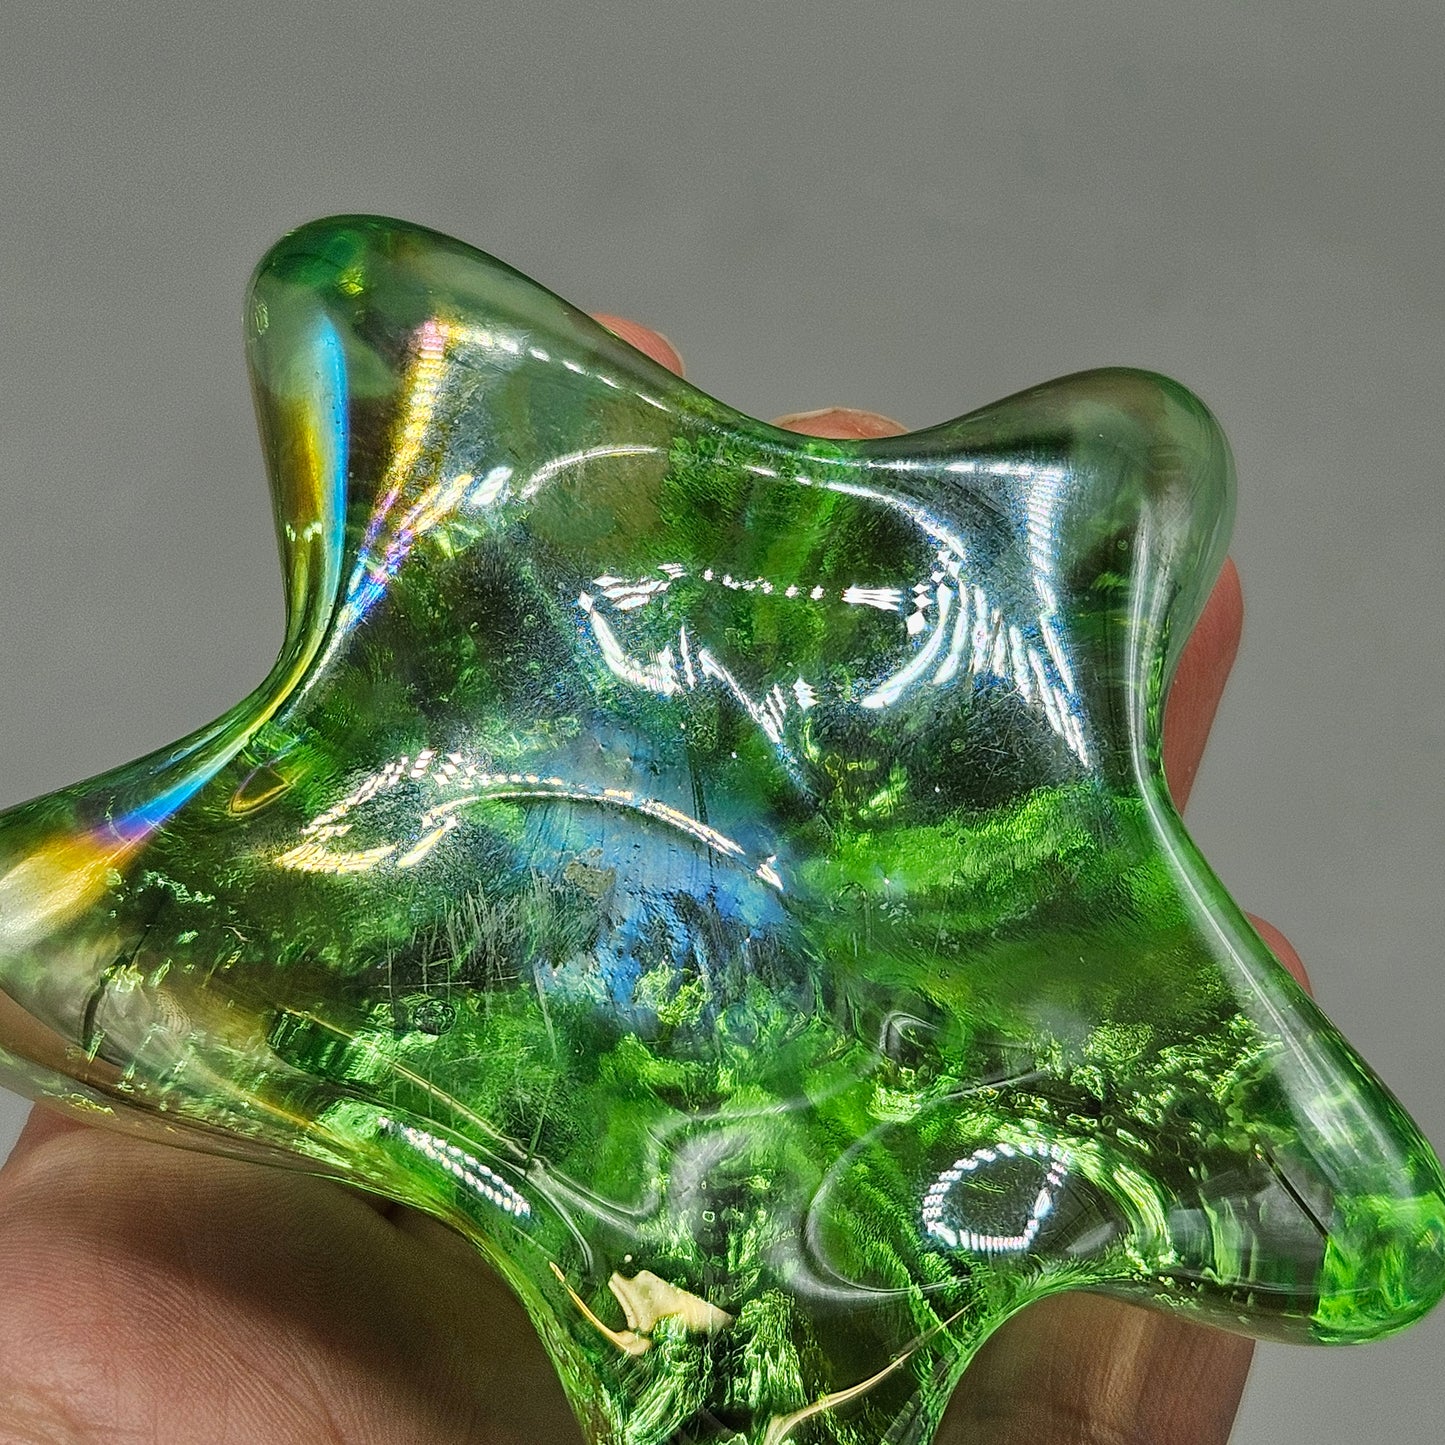 Iridescent Glass Green Starfish Paperweight